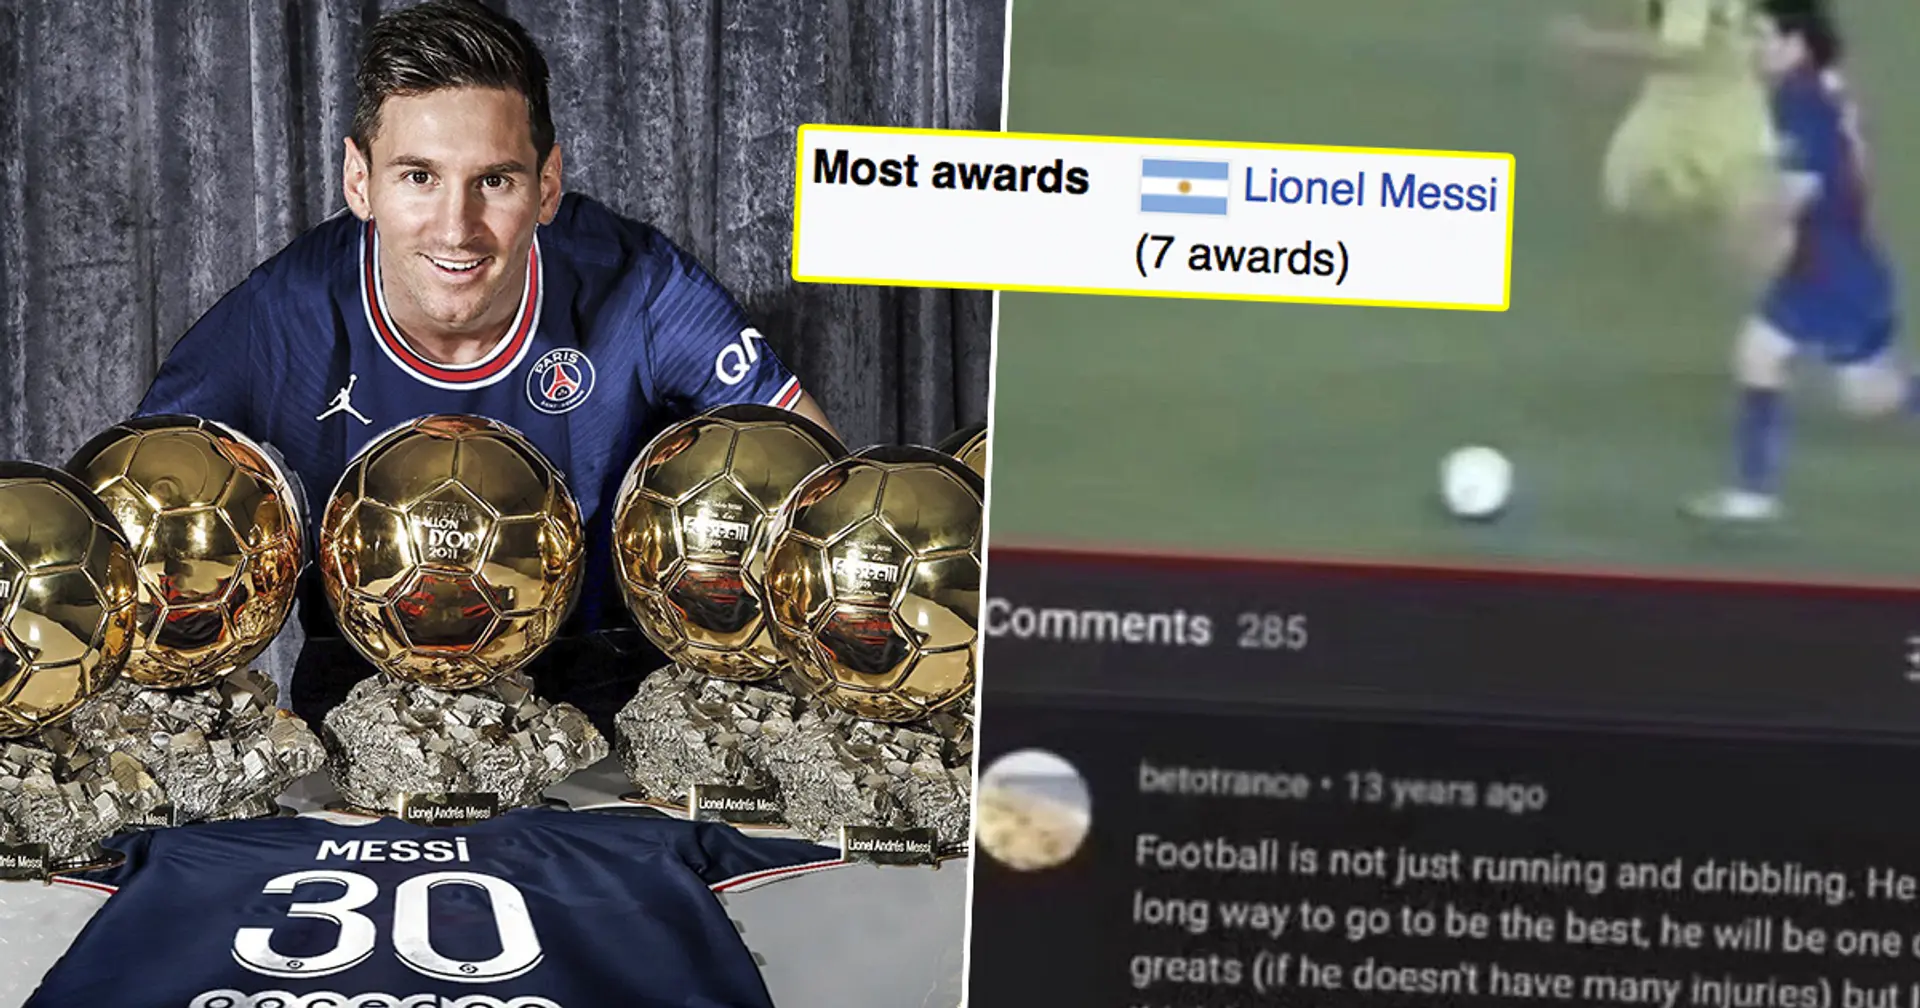 "Le football, ce n'est pas seulement courir et dribbler": la pire prédiction du Ballon d'Or sur Messi depuis 2008